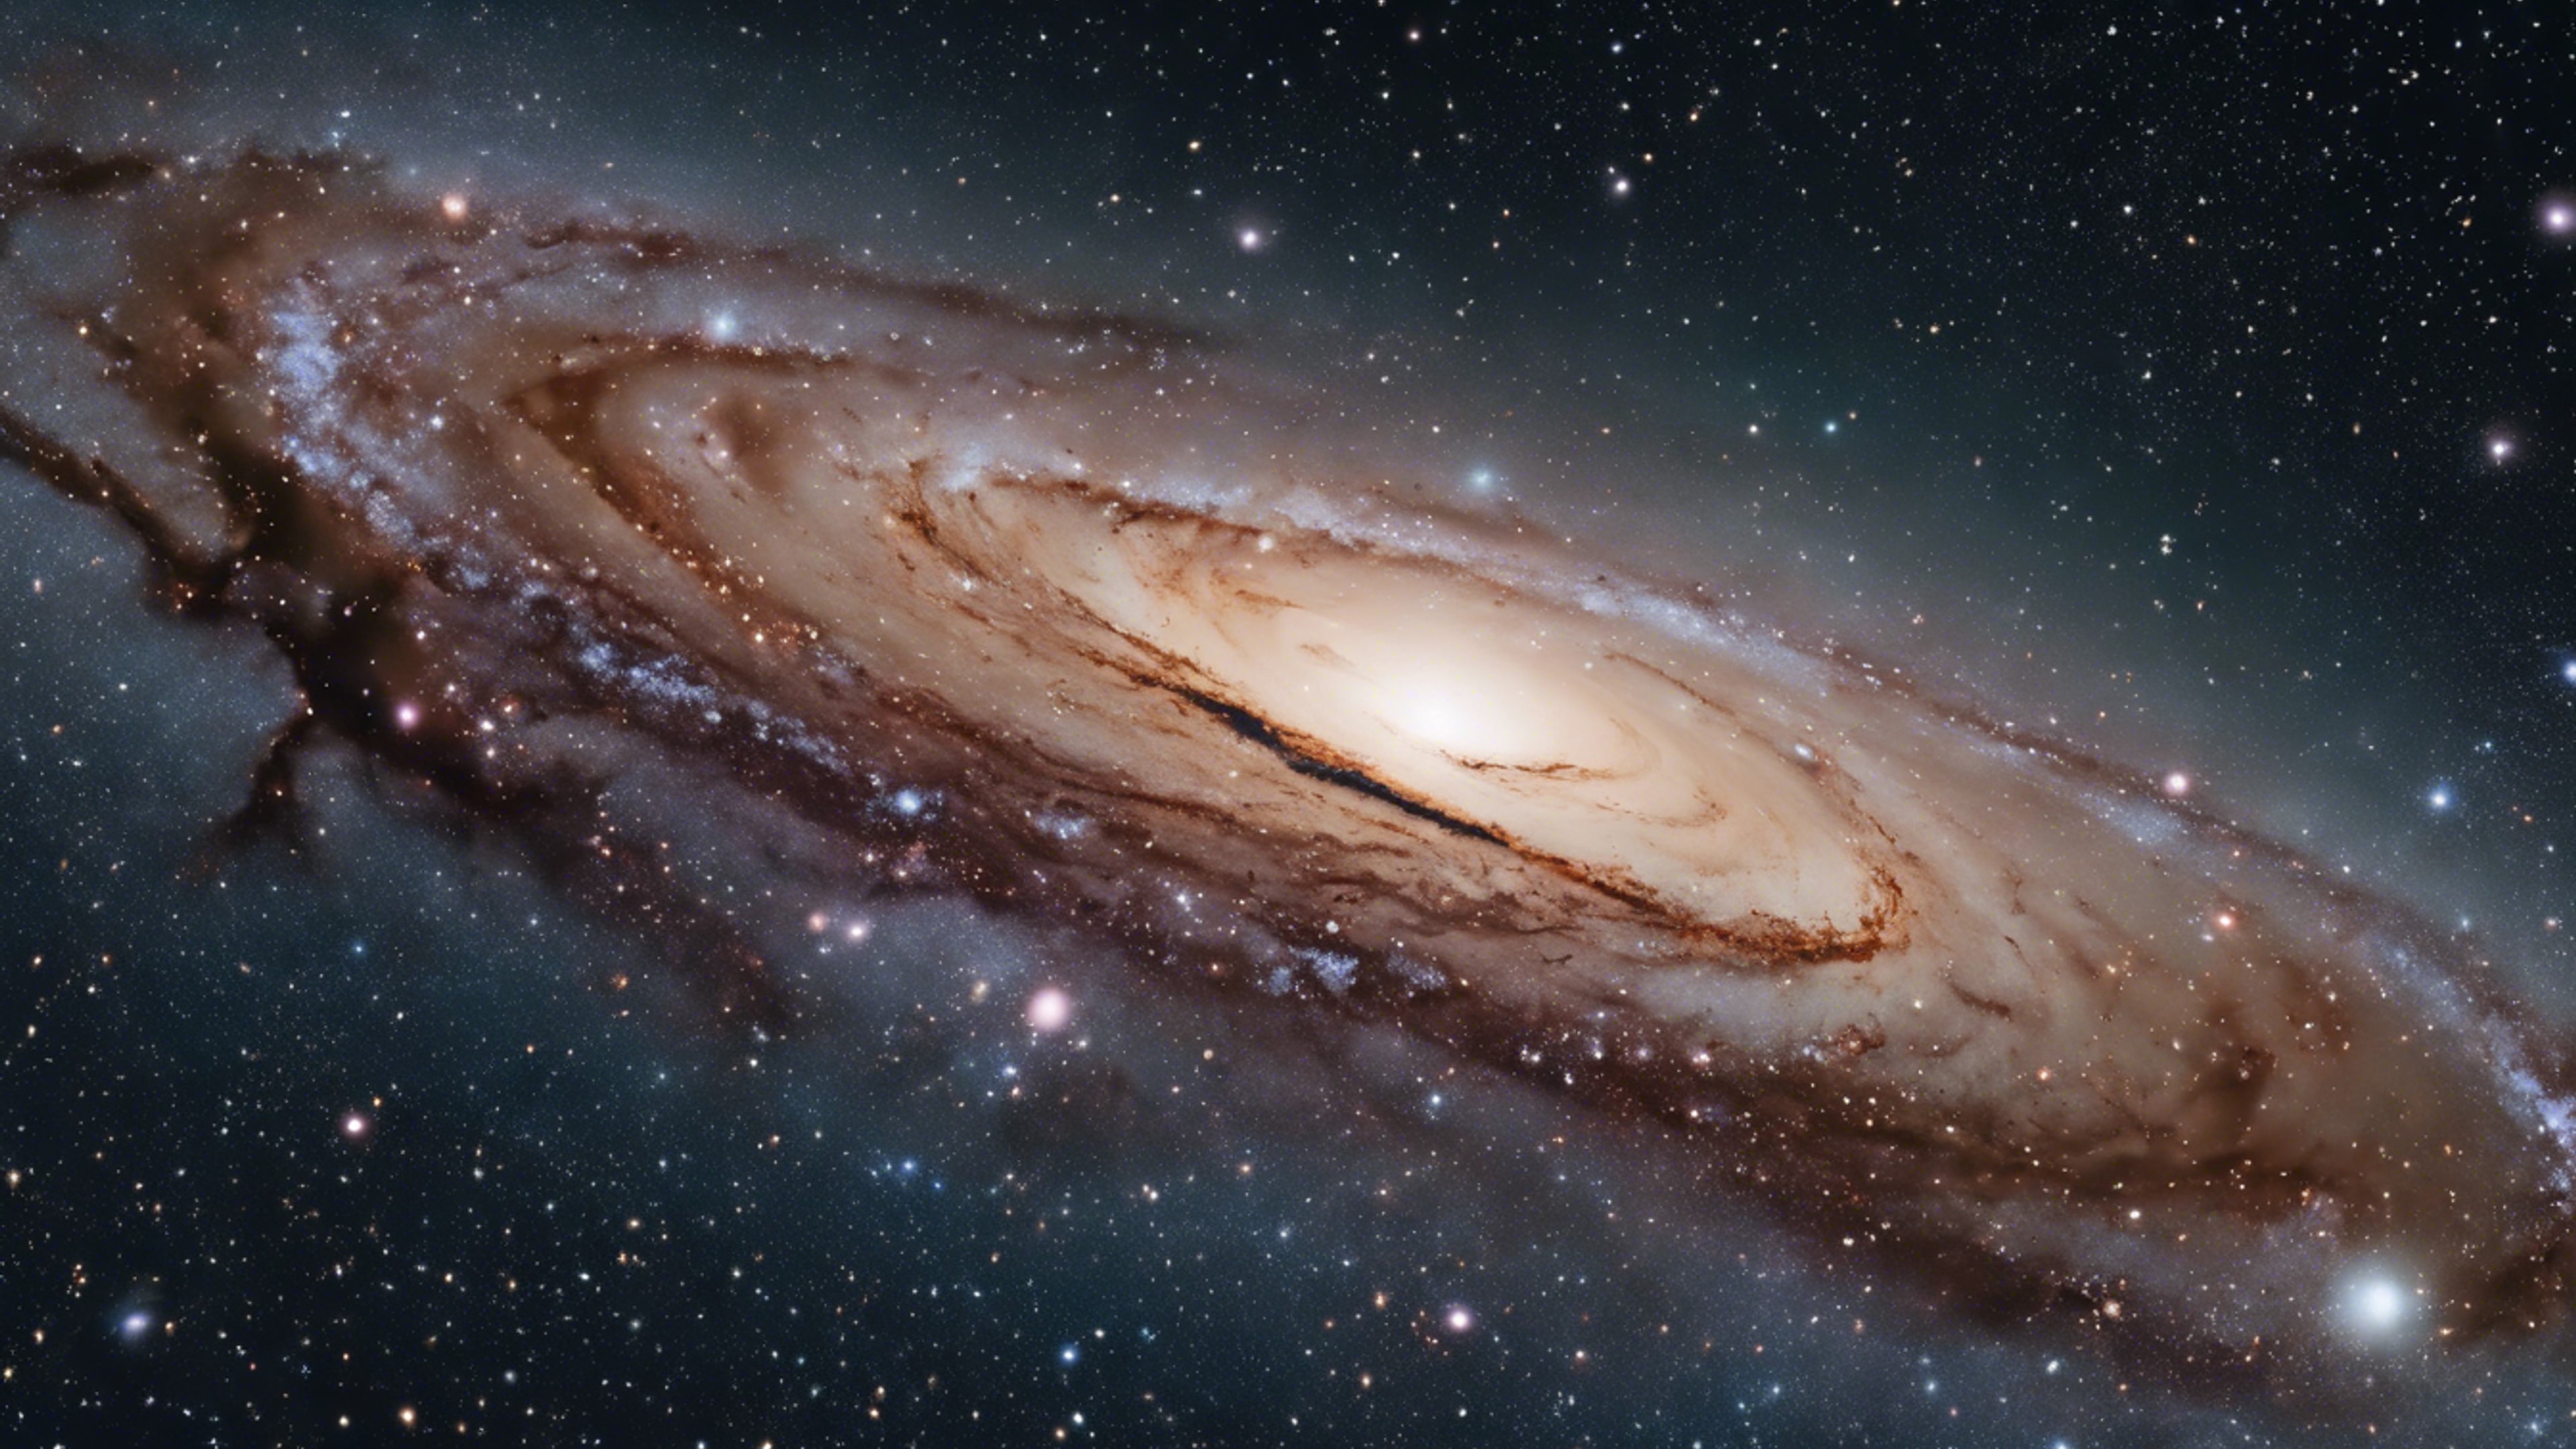 A star field with the beautiful spiral Andromeda galaxy in the backdrop. Tapeta[e203e5da70ed49c49672]